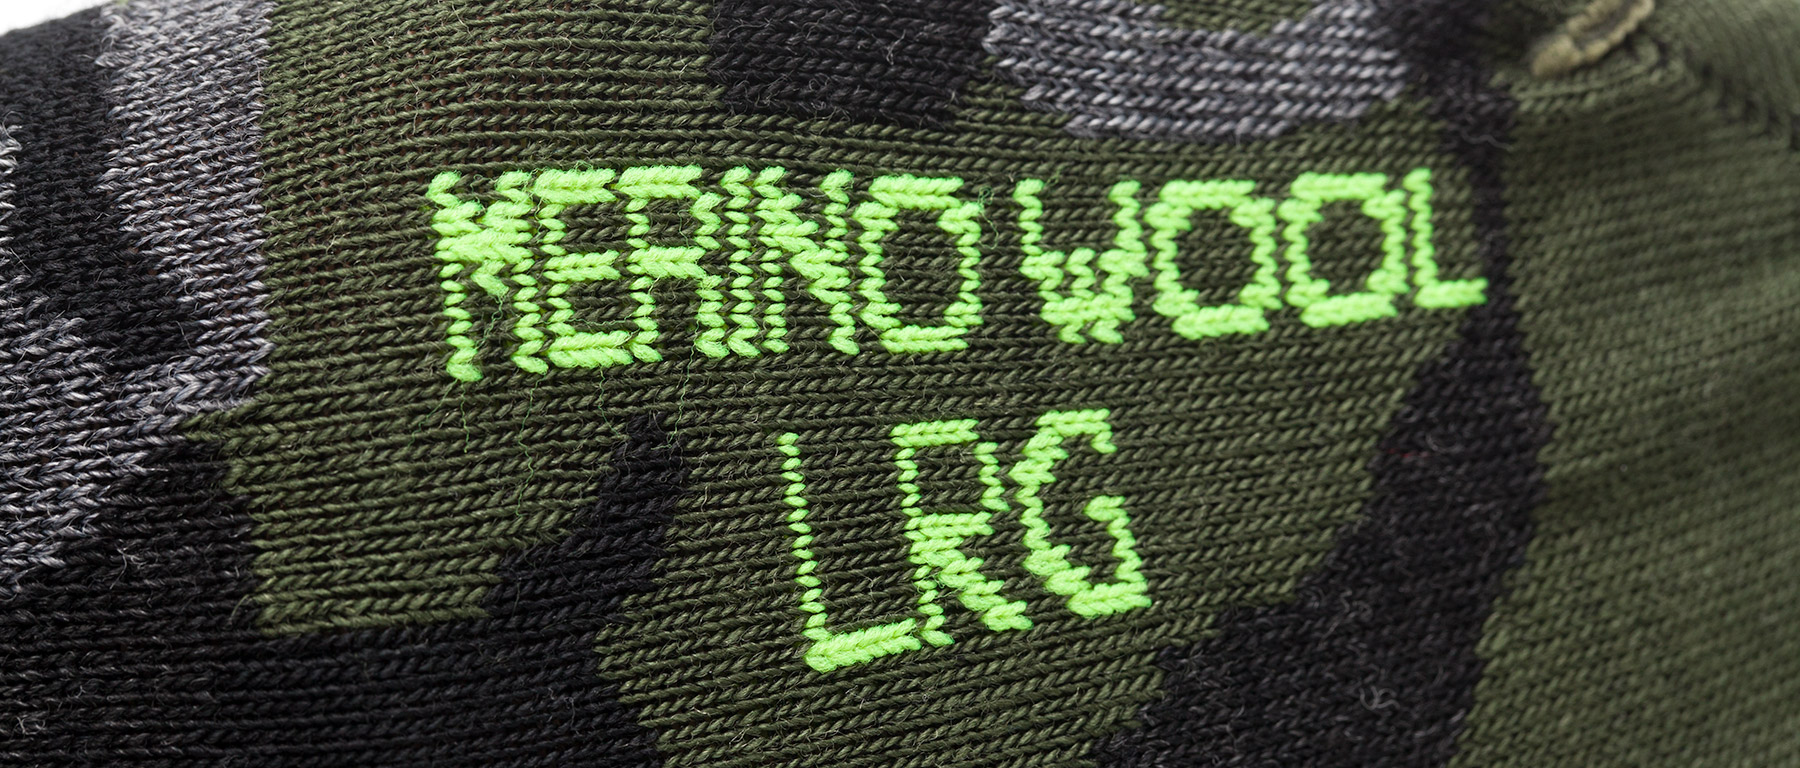 Giro Merino Seasonal Wool Socks